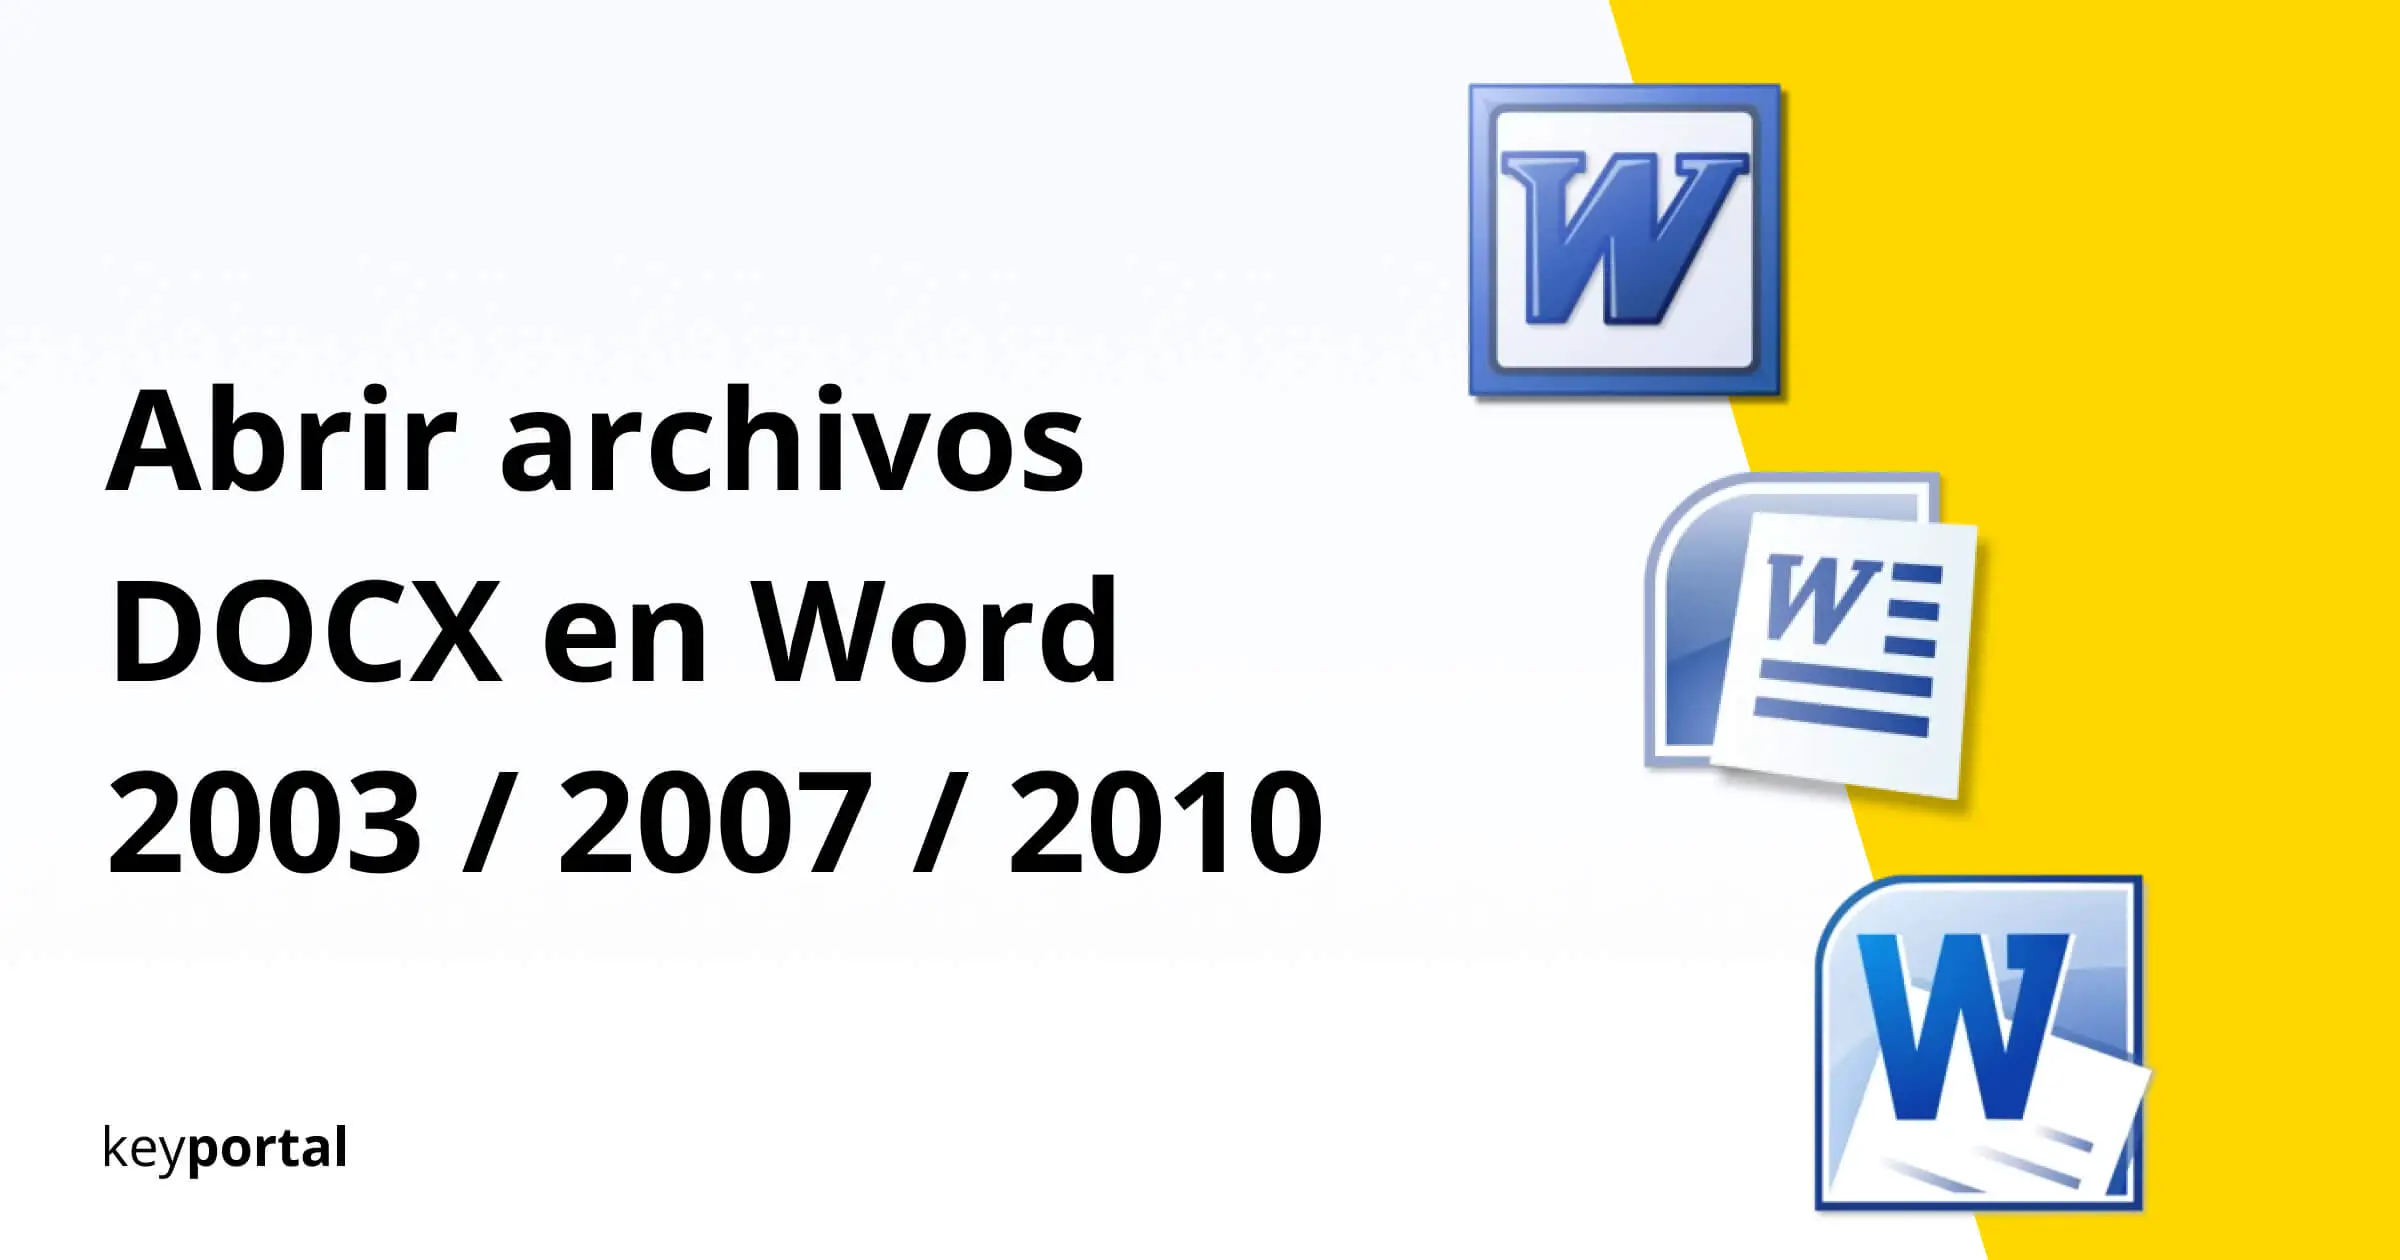 Abrir archivos DOCX en Word 2003 2007 / 2010 - keyportal.es